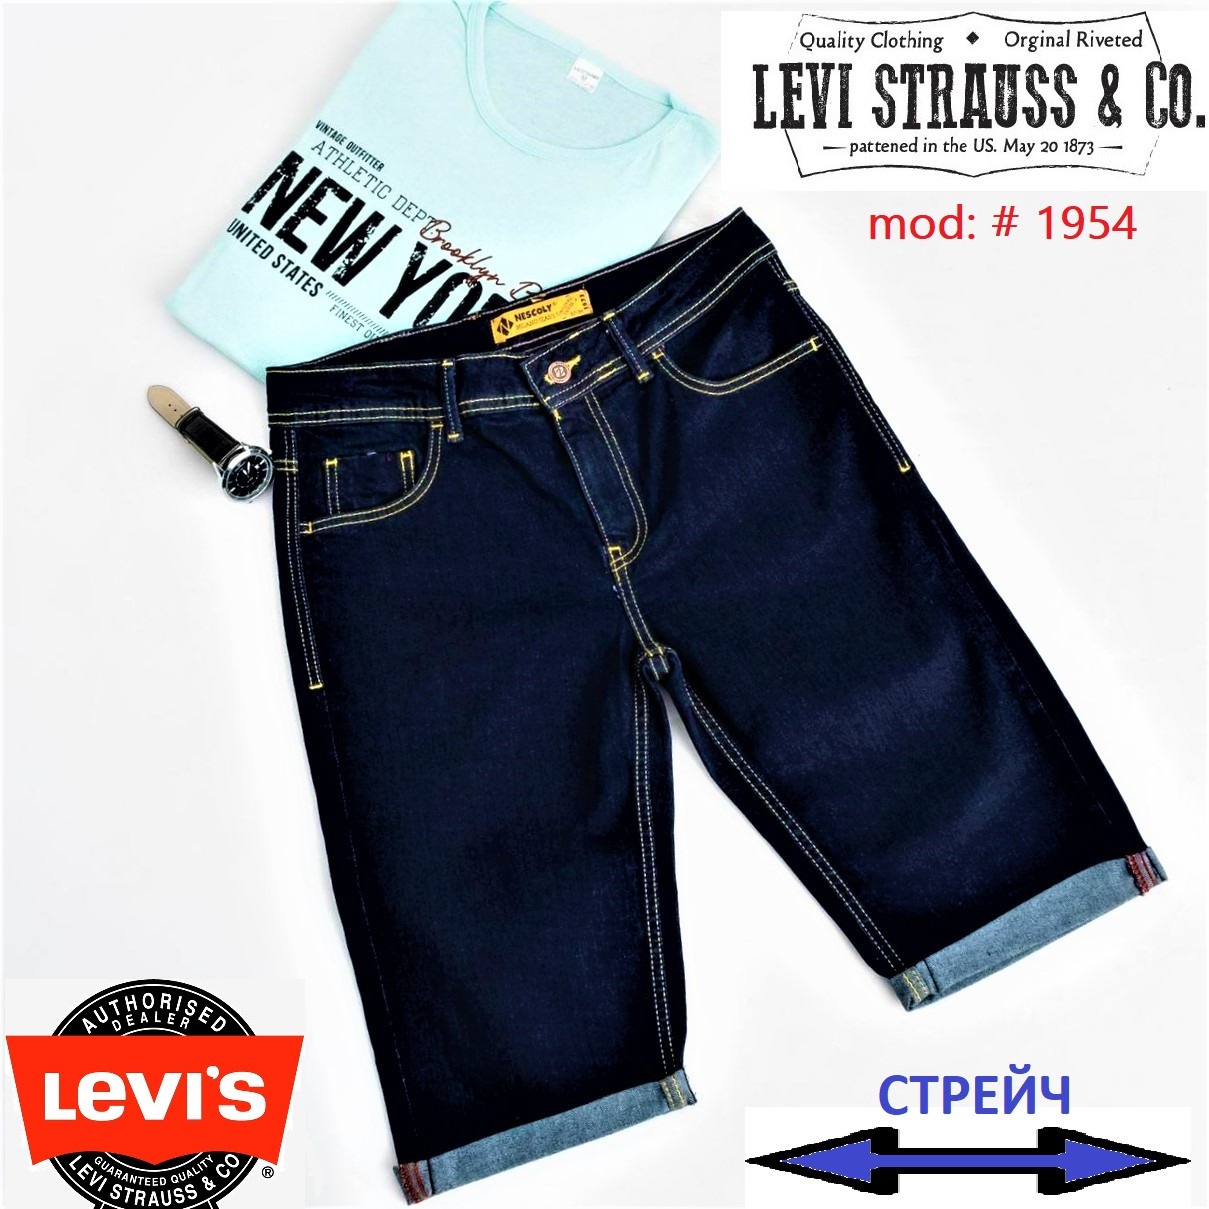 Чоловічі класичні джинсові шорти Levis&Milano Jeans Nescoly. Бриджі, бермуди чорного кольору., фото 1